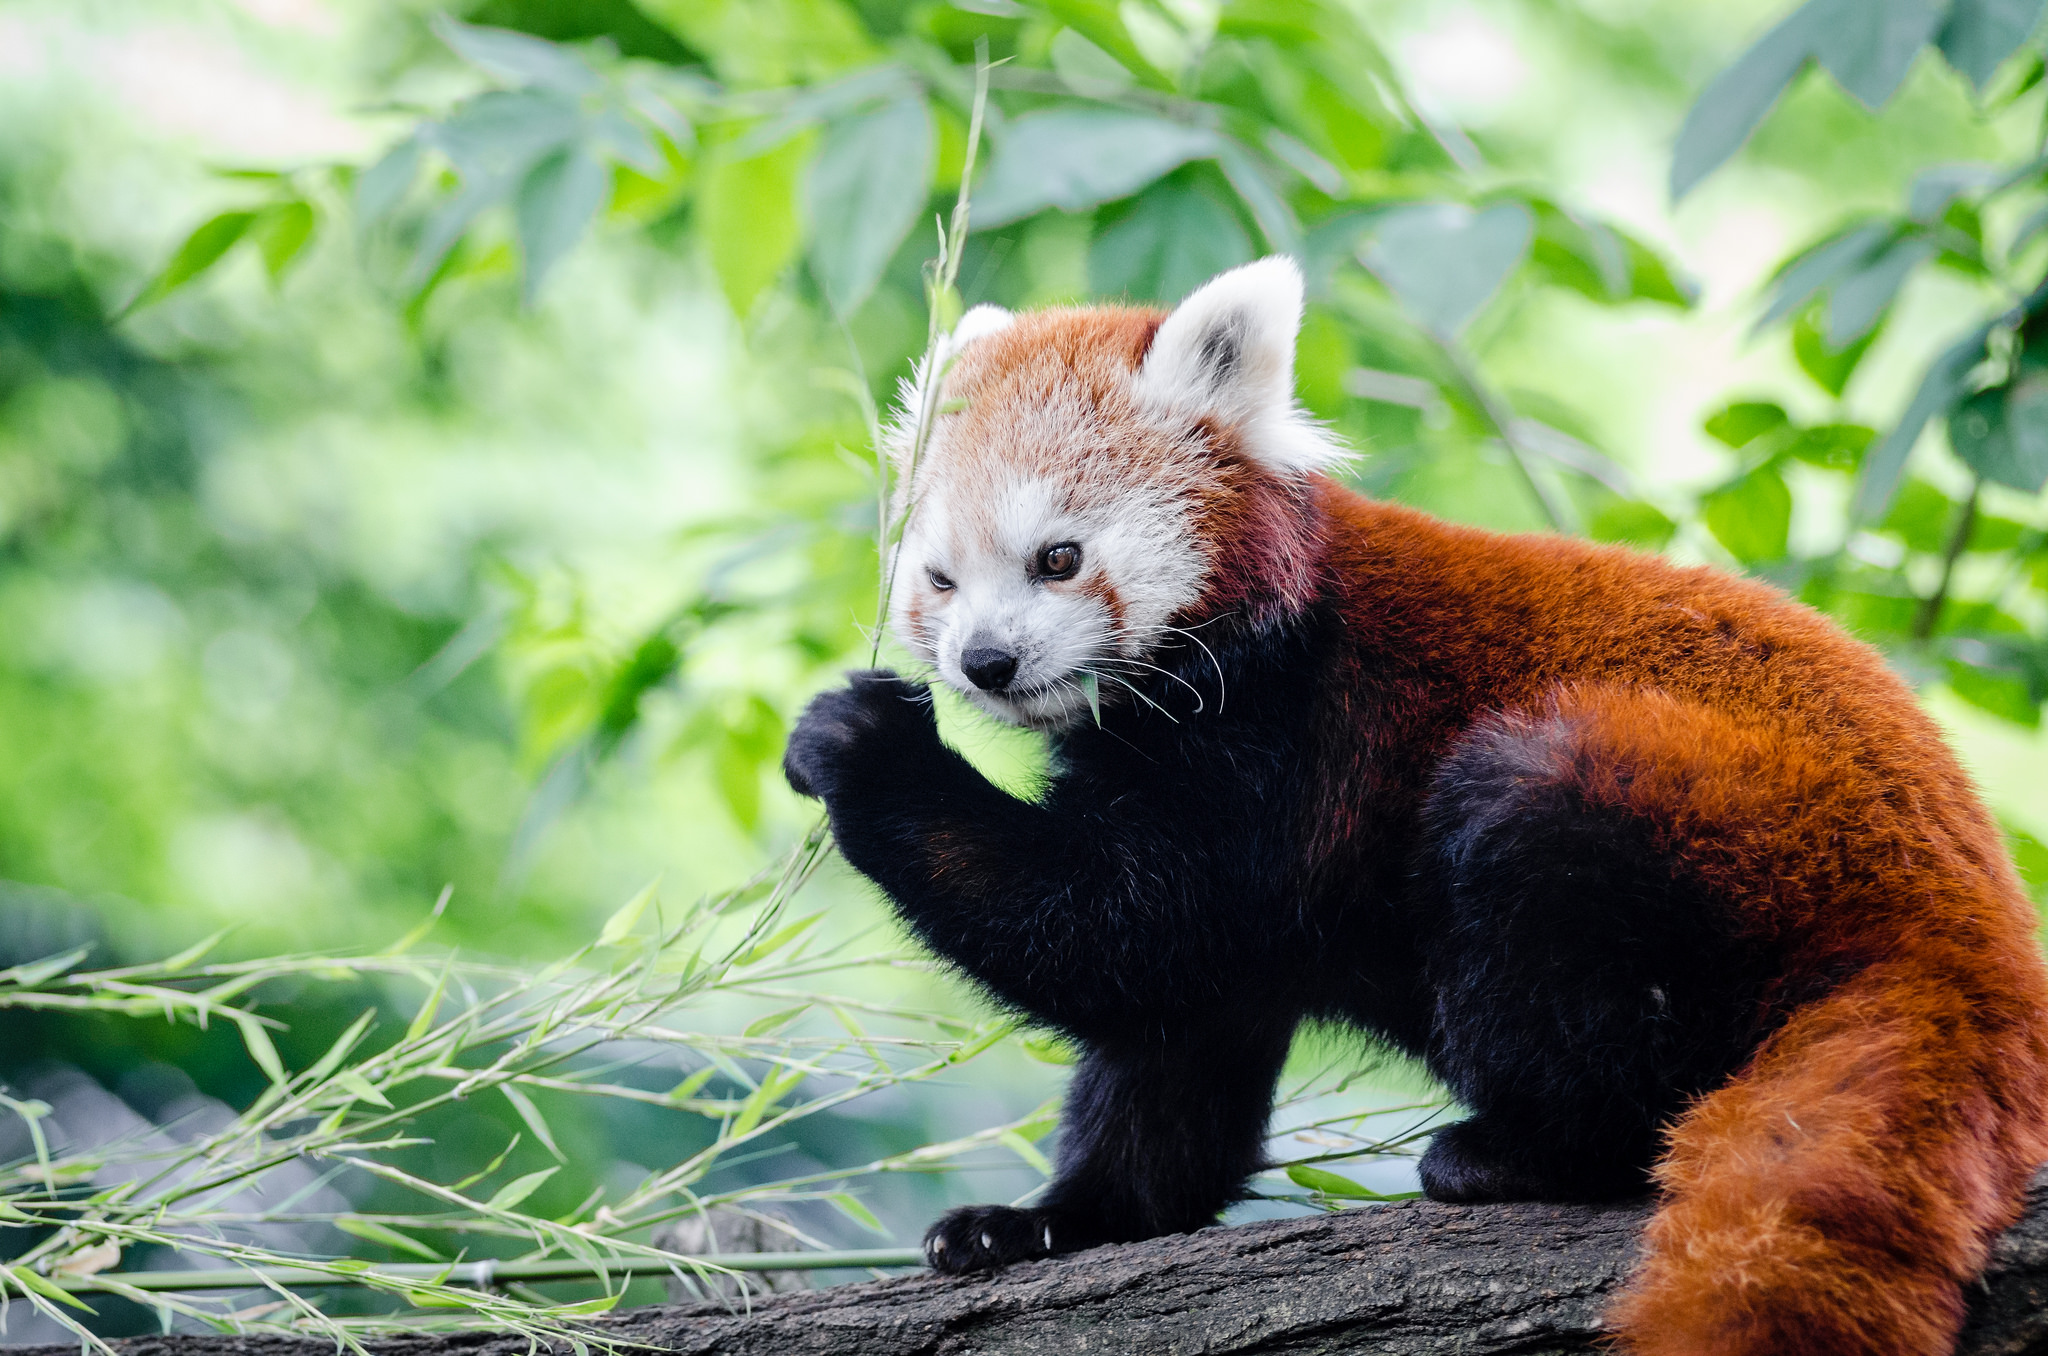 Red Panda eating bamboo